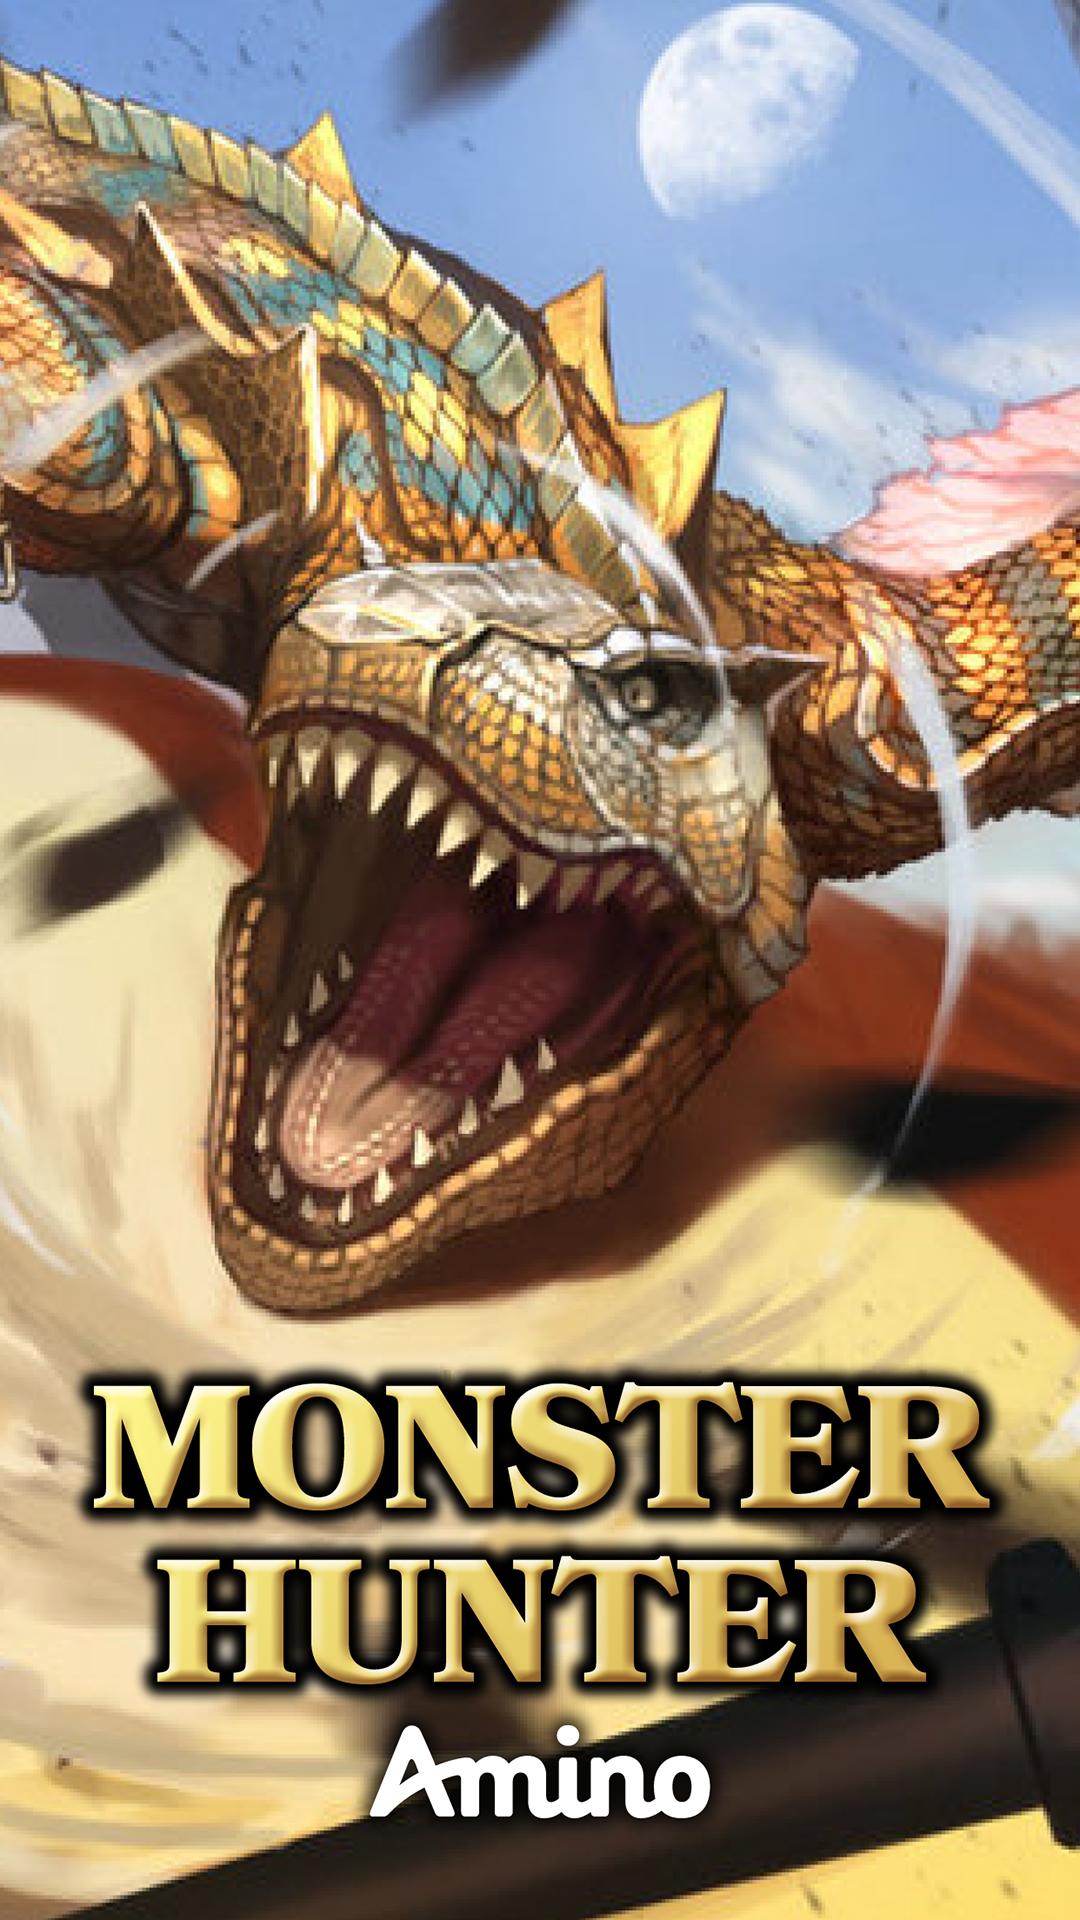 Monster Hunter Amino 3.4.33514 Screenshot 1